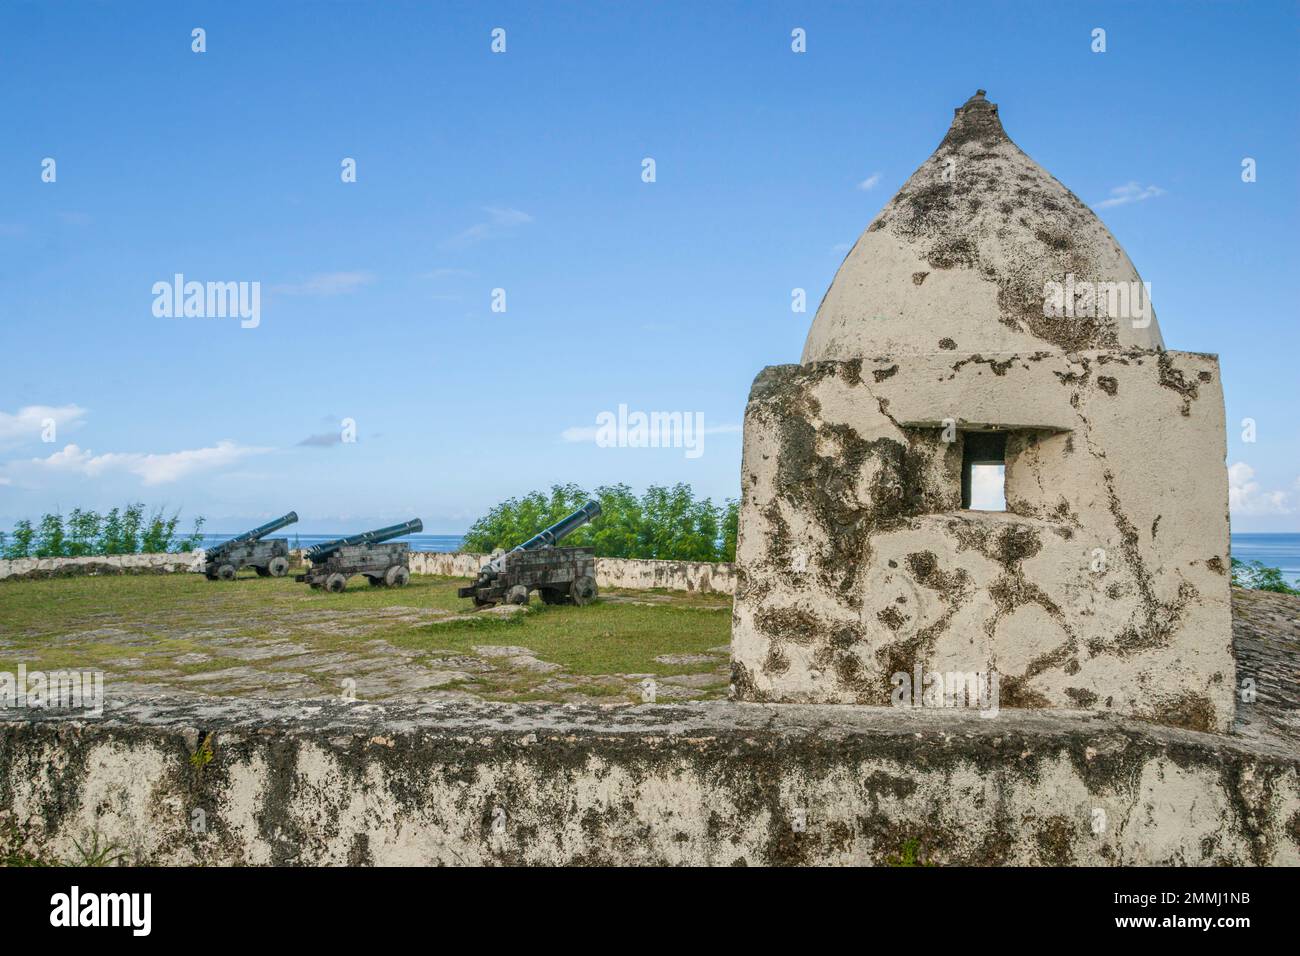 Storico Forte spagnolo Nuestra Senora de la Soledad, noto anche come Forte Soledad, costruito nel 1800s vicino a Umatac Beach, Guam Island, territorio degli Stati Uniti, Pacifico centrale. Foto Stock